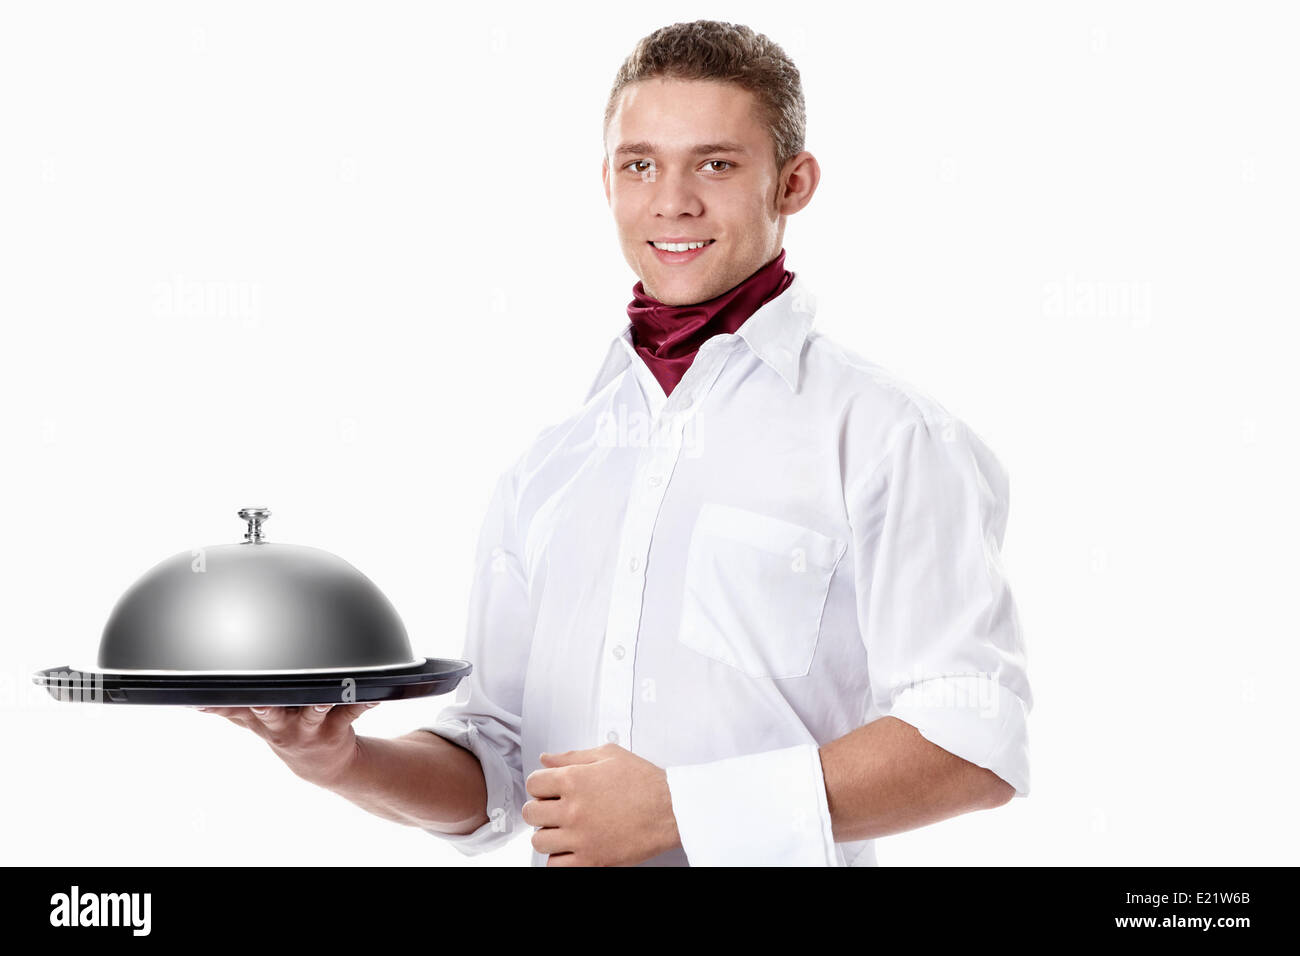 Waiter with tray Stock Photo